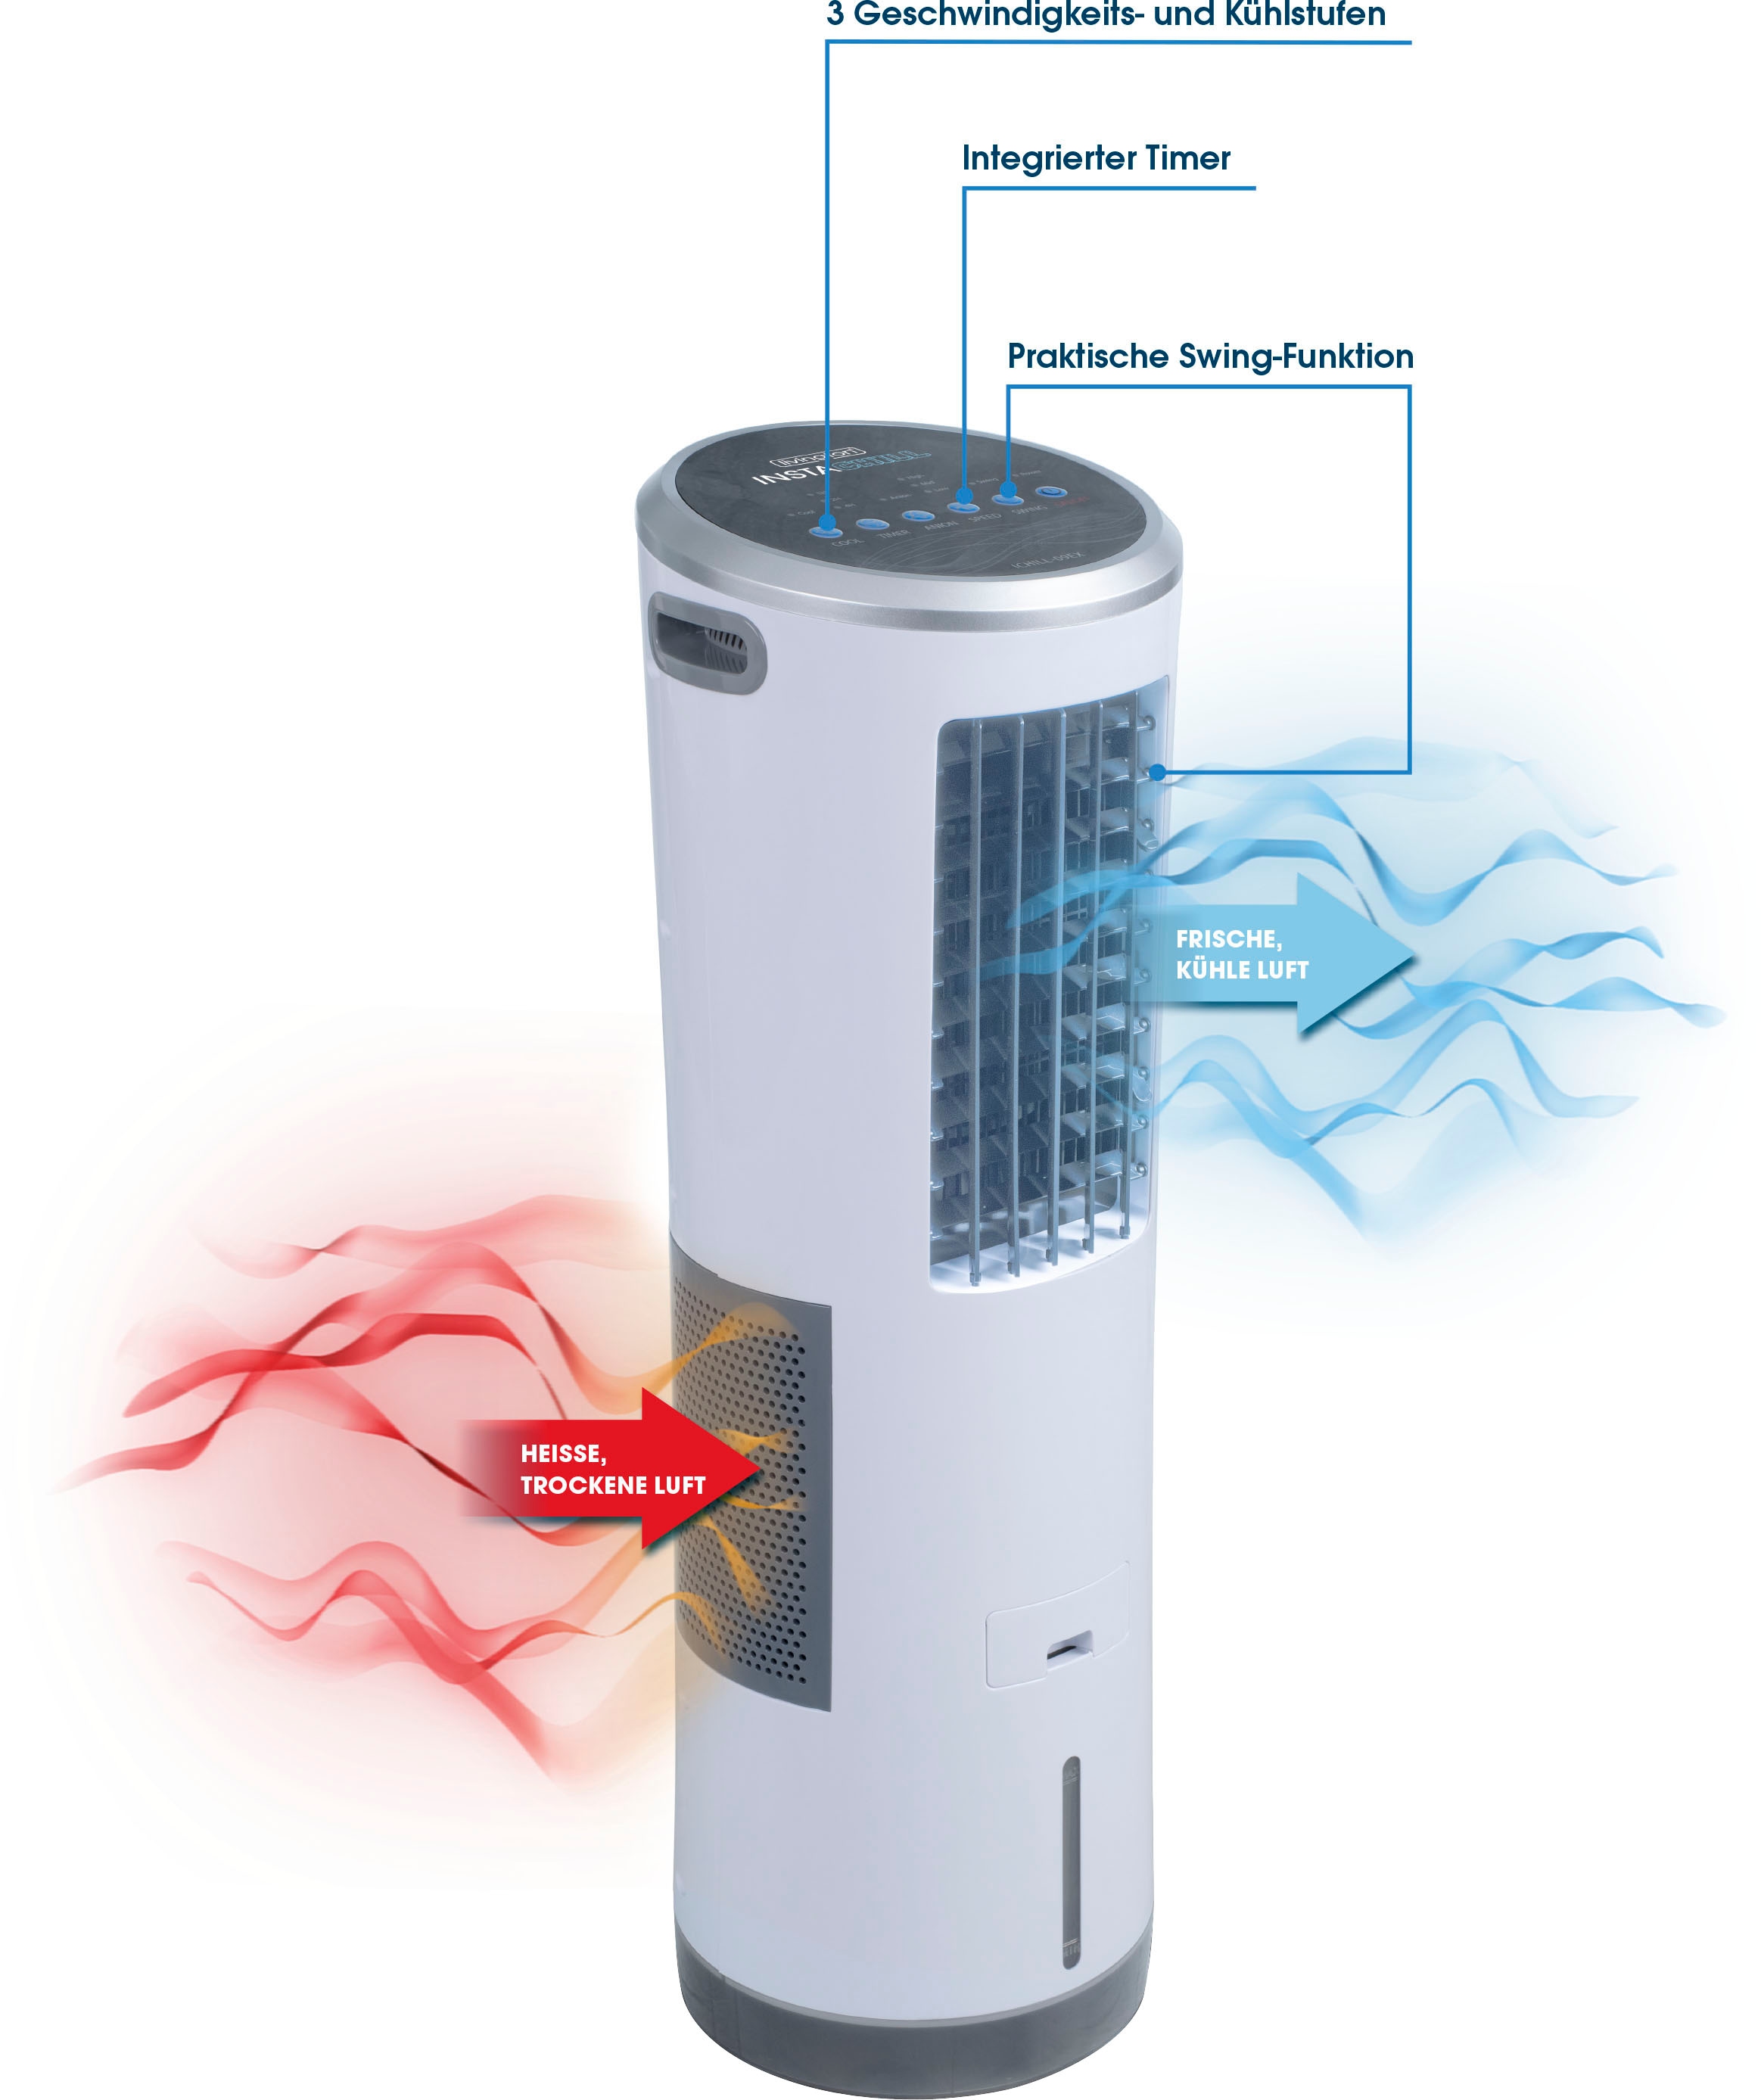 MediaShop Ventilatorkombigerät »InstaChill«, Luftkühler, 8,5 l Fassungsvermögen